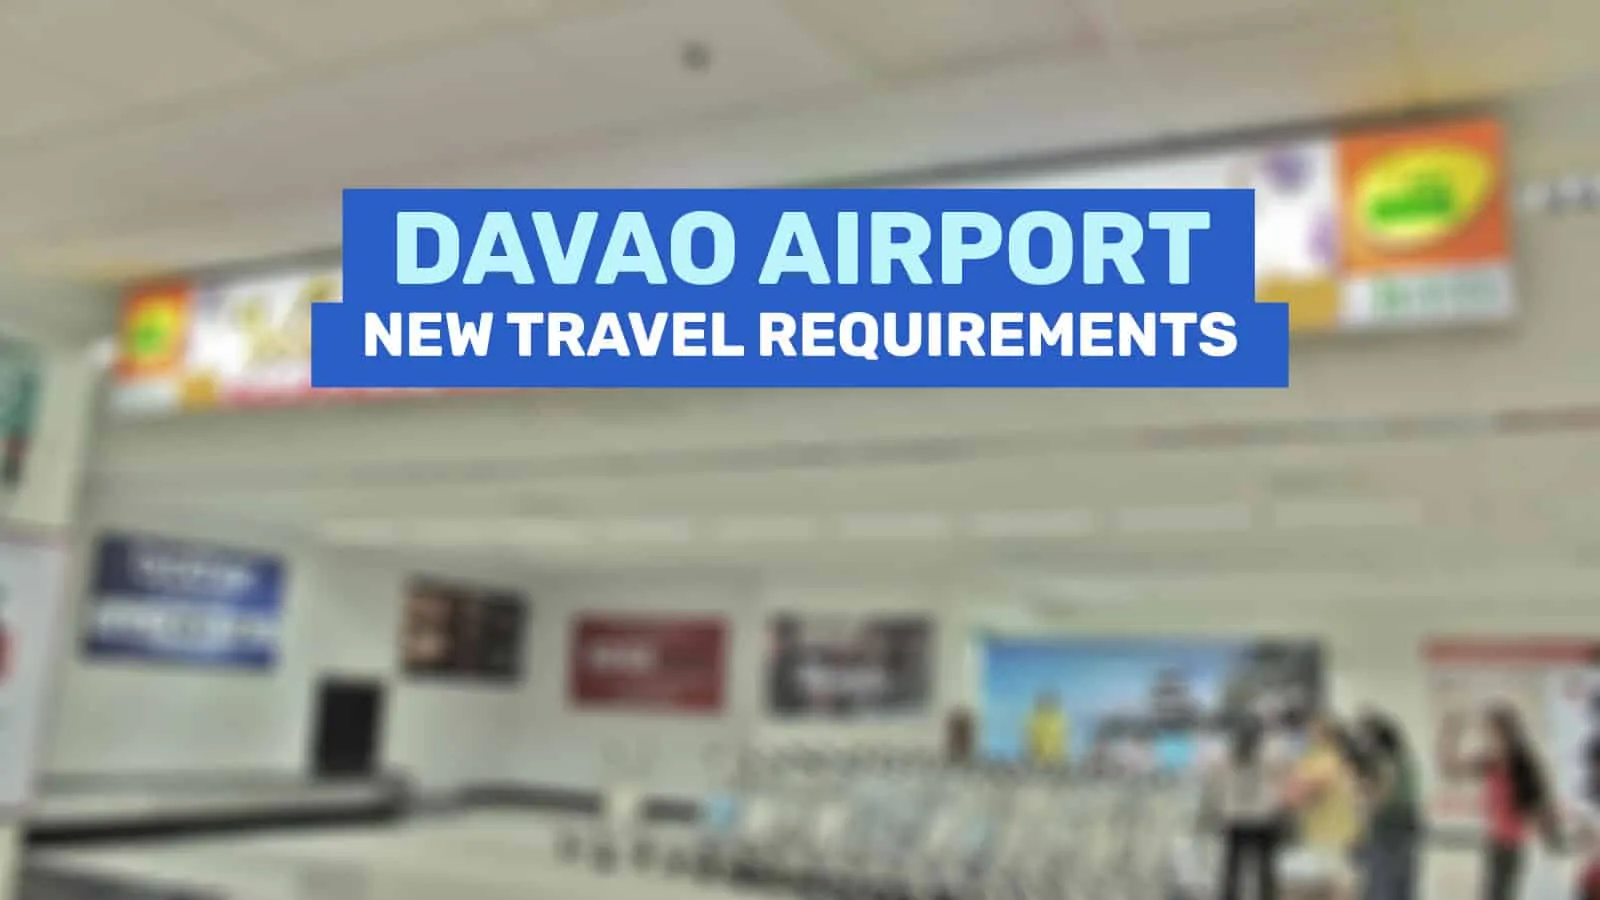 达沃机场:新的旅行要求和指南